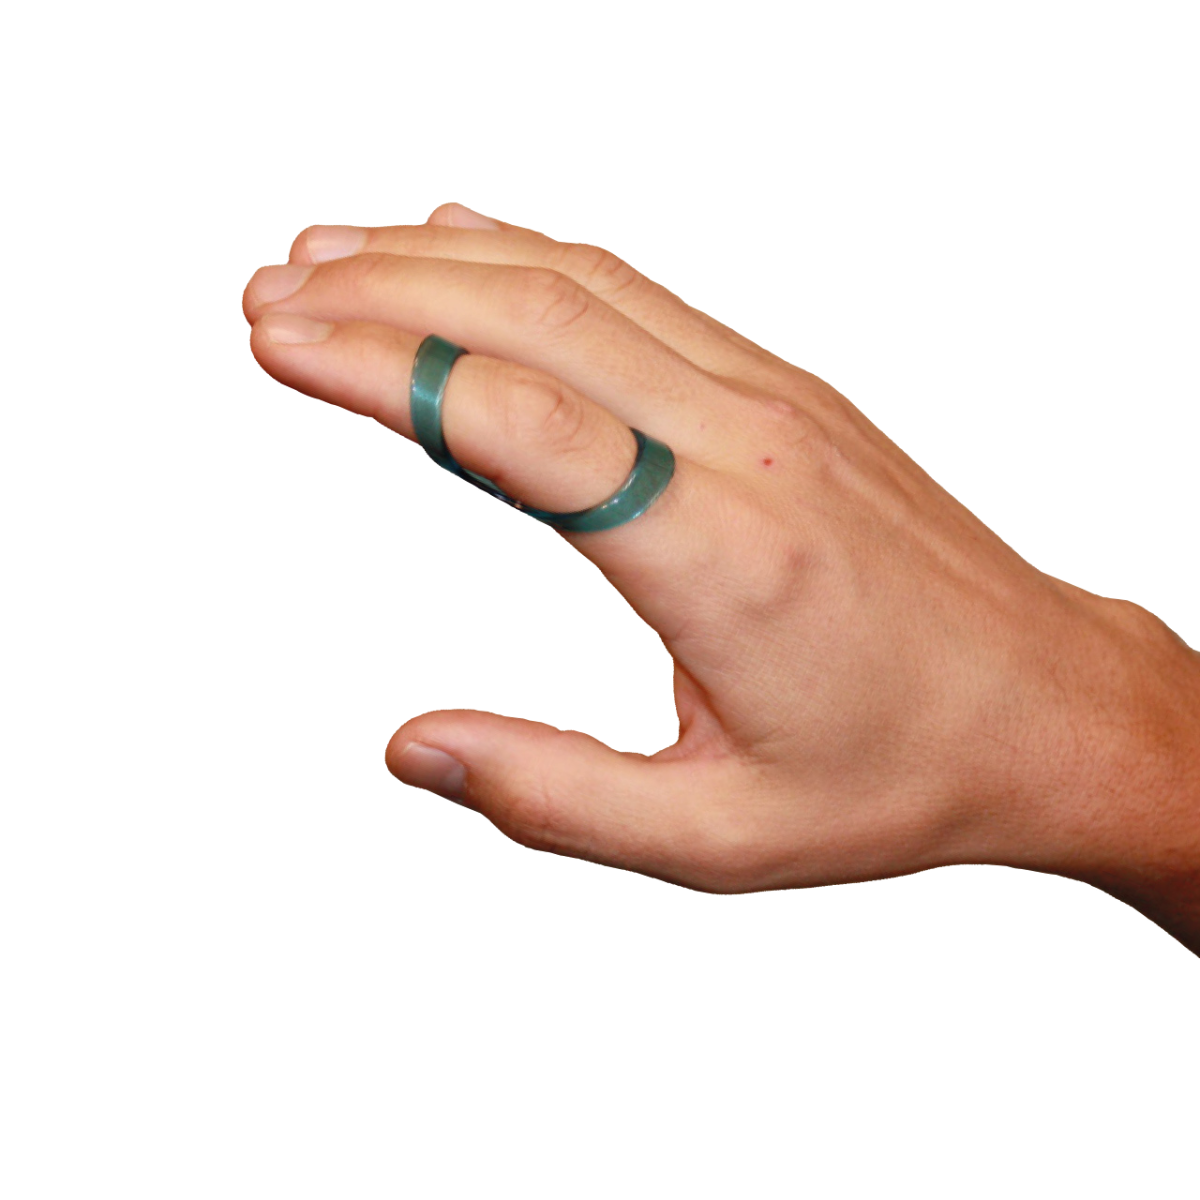 Fixační ortéza na prst krátká transparentní CATELL, vel. 32, C5180*32